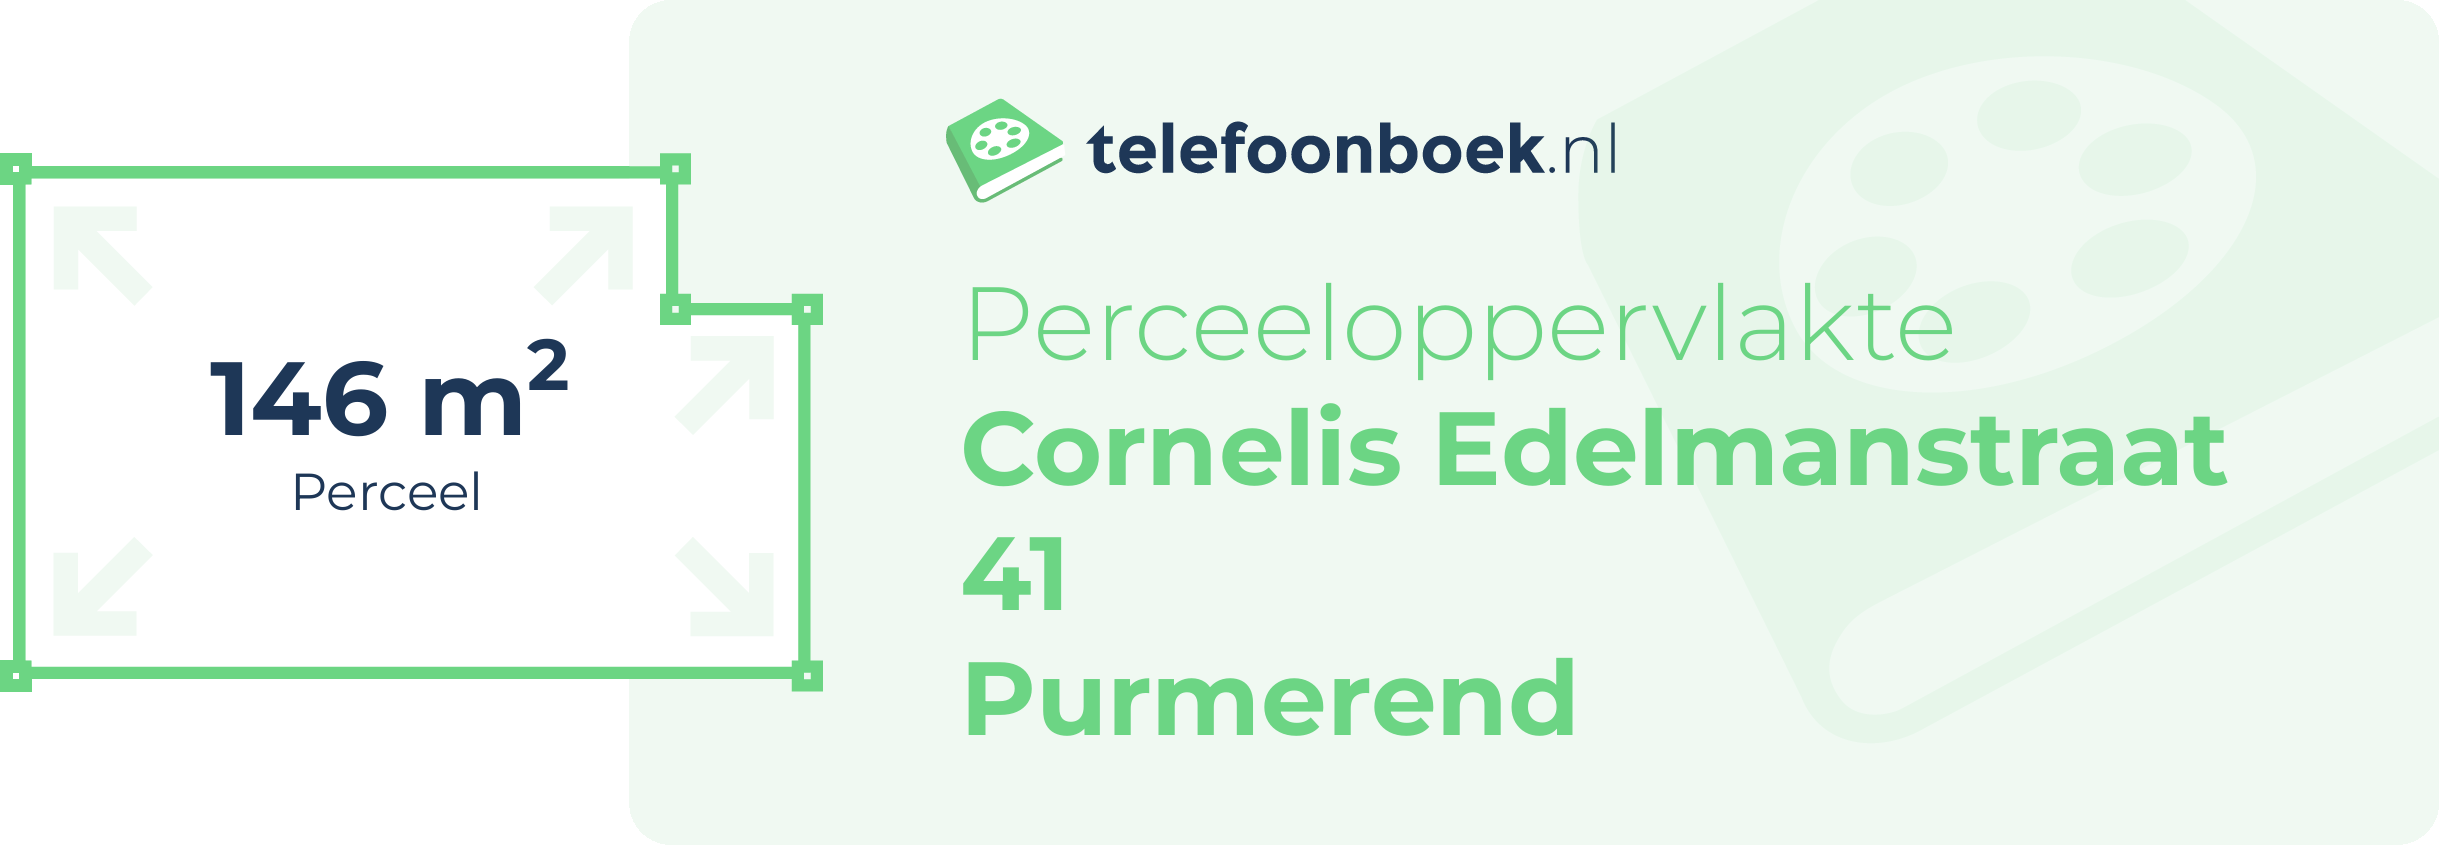 Perceeloppervlakte Cornelis Edelmanstraat 41 Purmerend